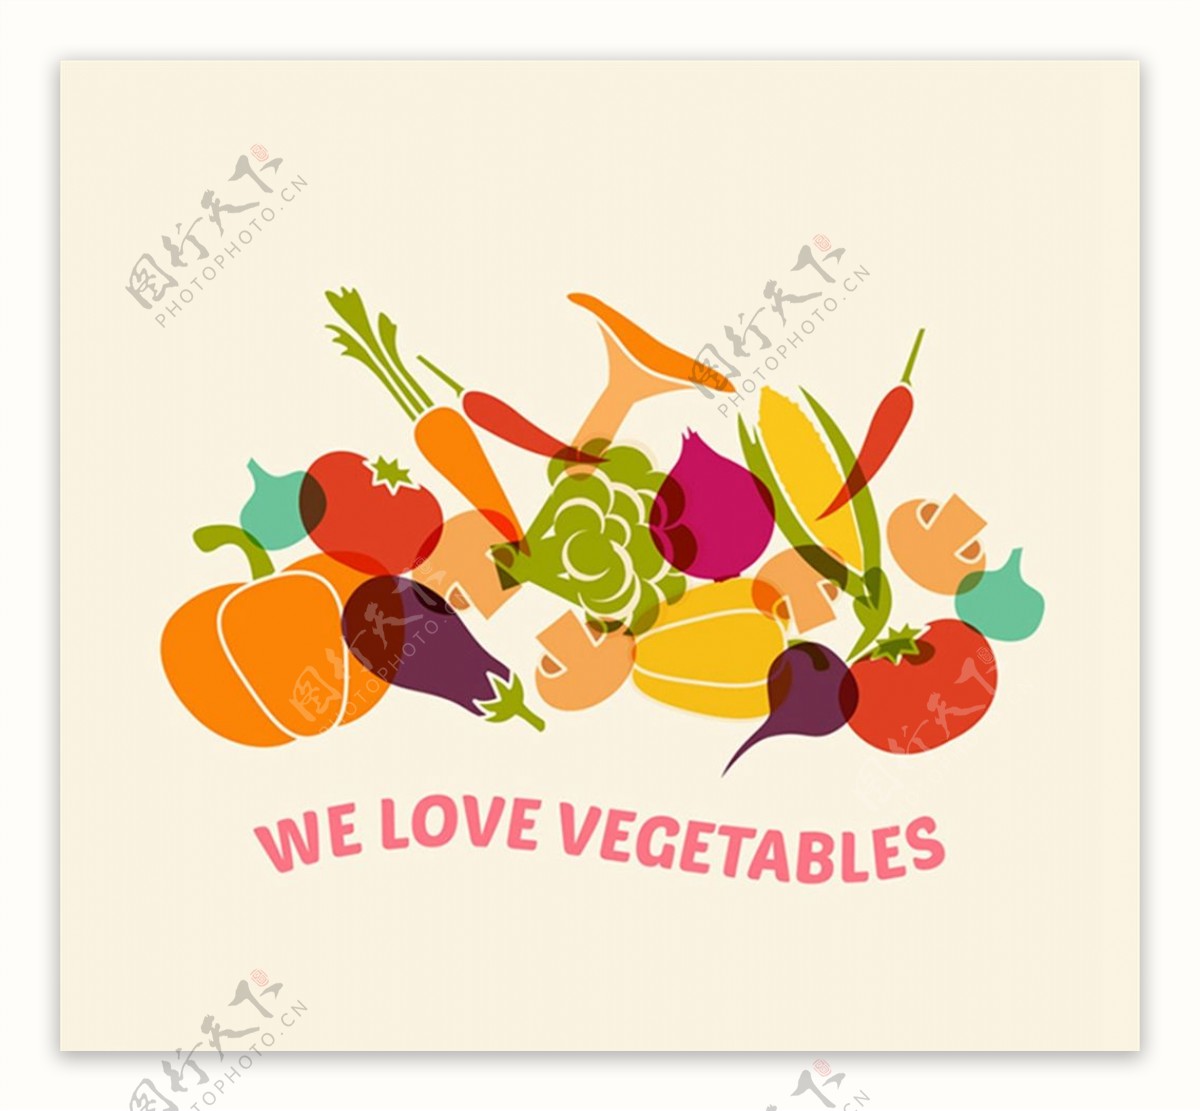 蔬菜矢量素材图片